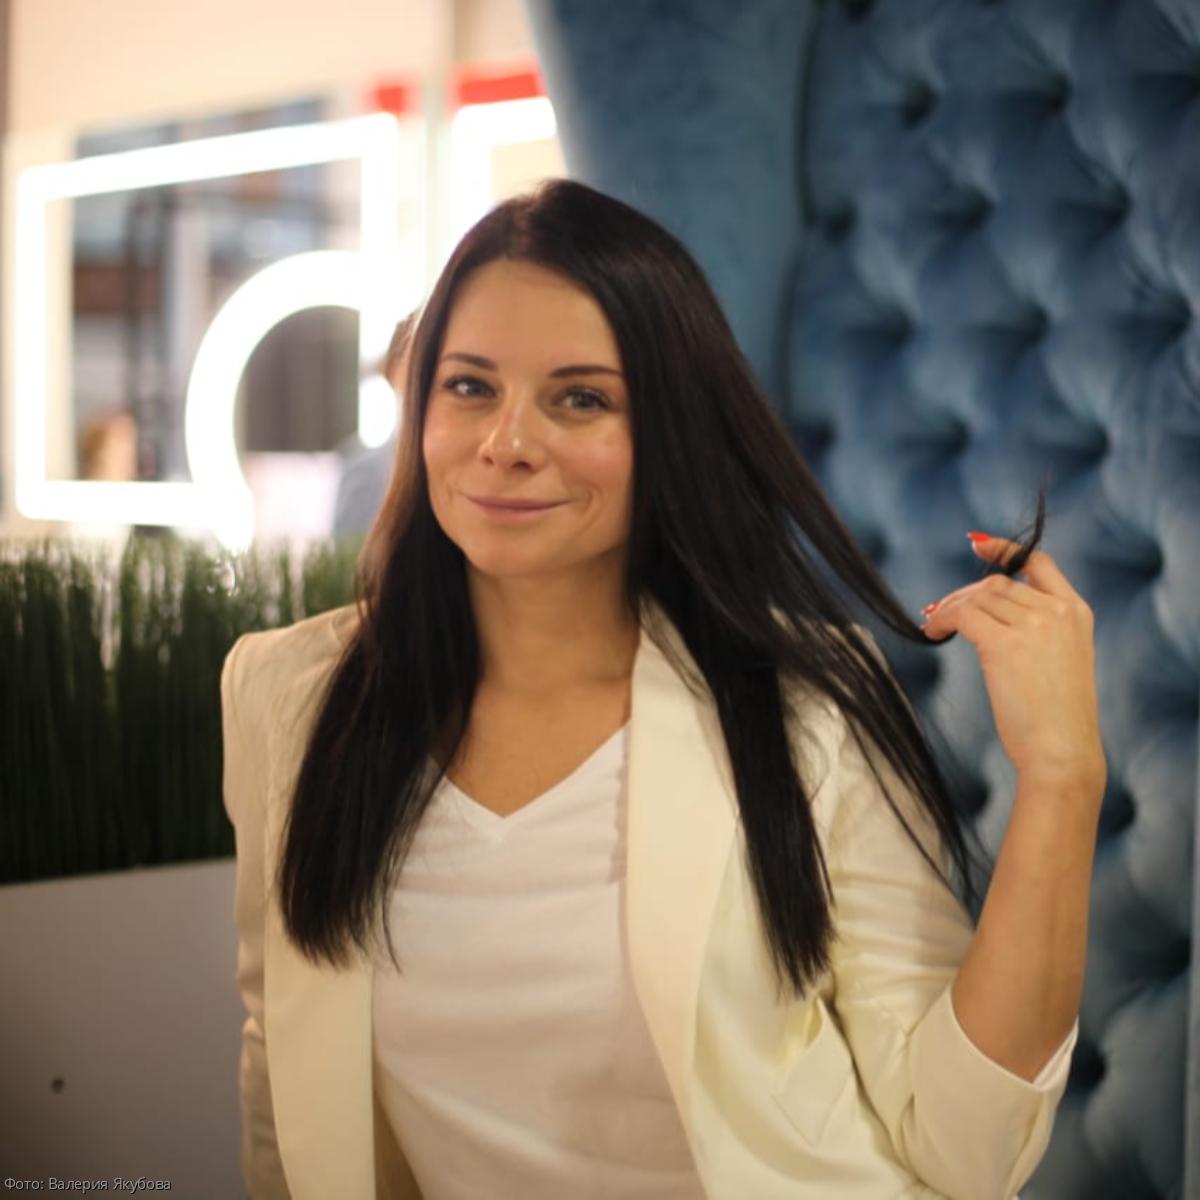 Специалист по наращиванию волос Наталья Репина рассказала, какие проблемы с волосами может решать данная процедура